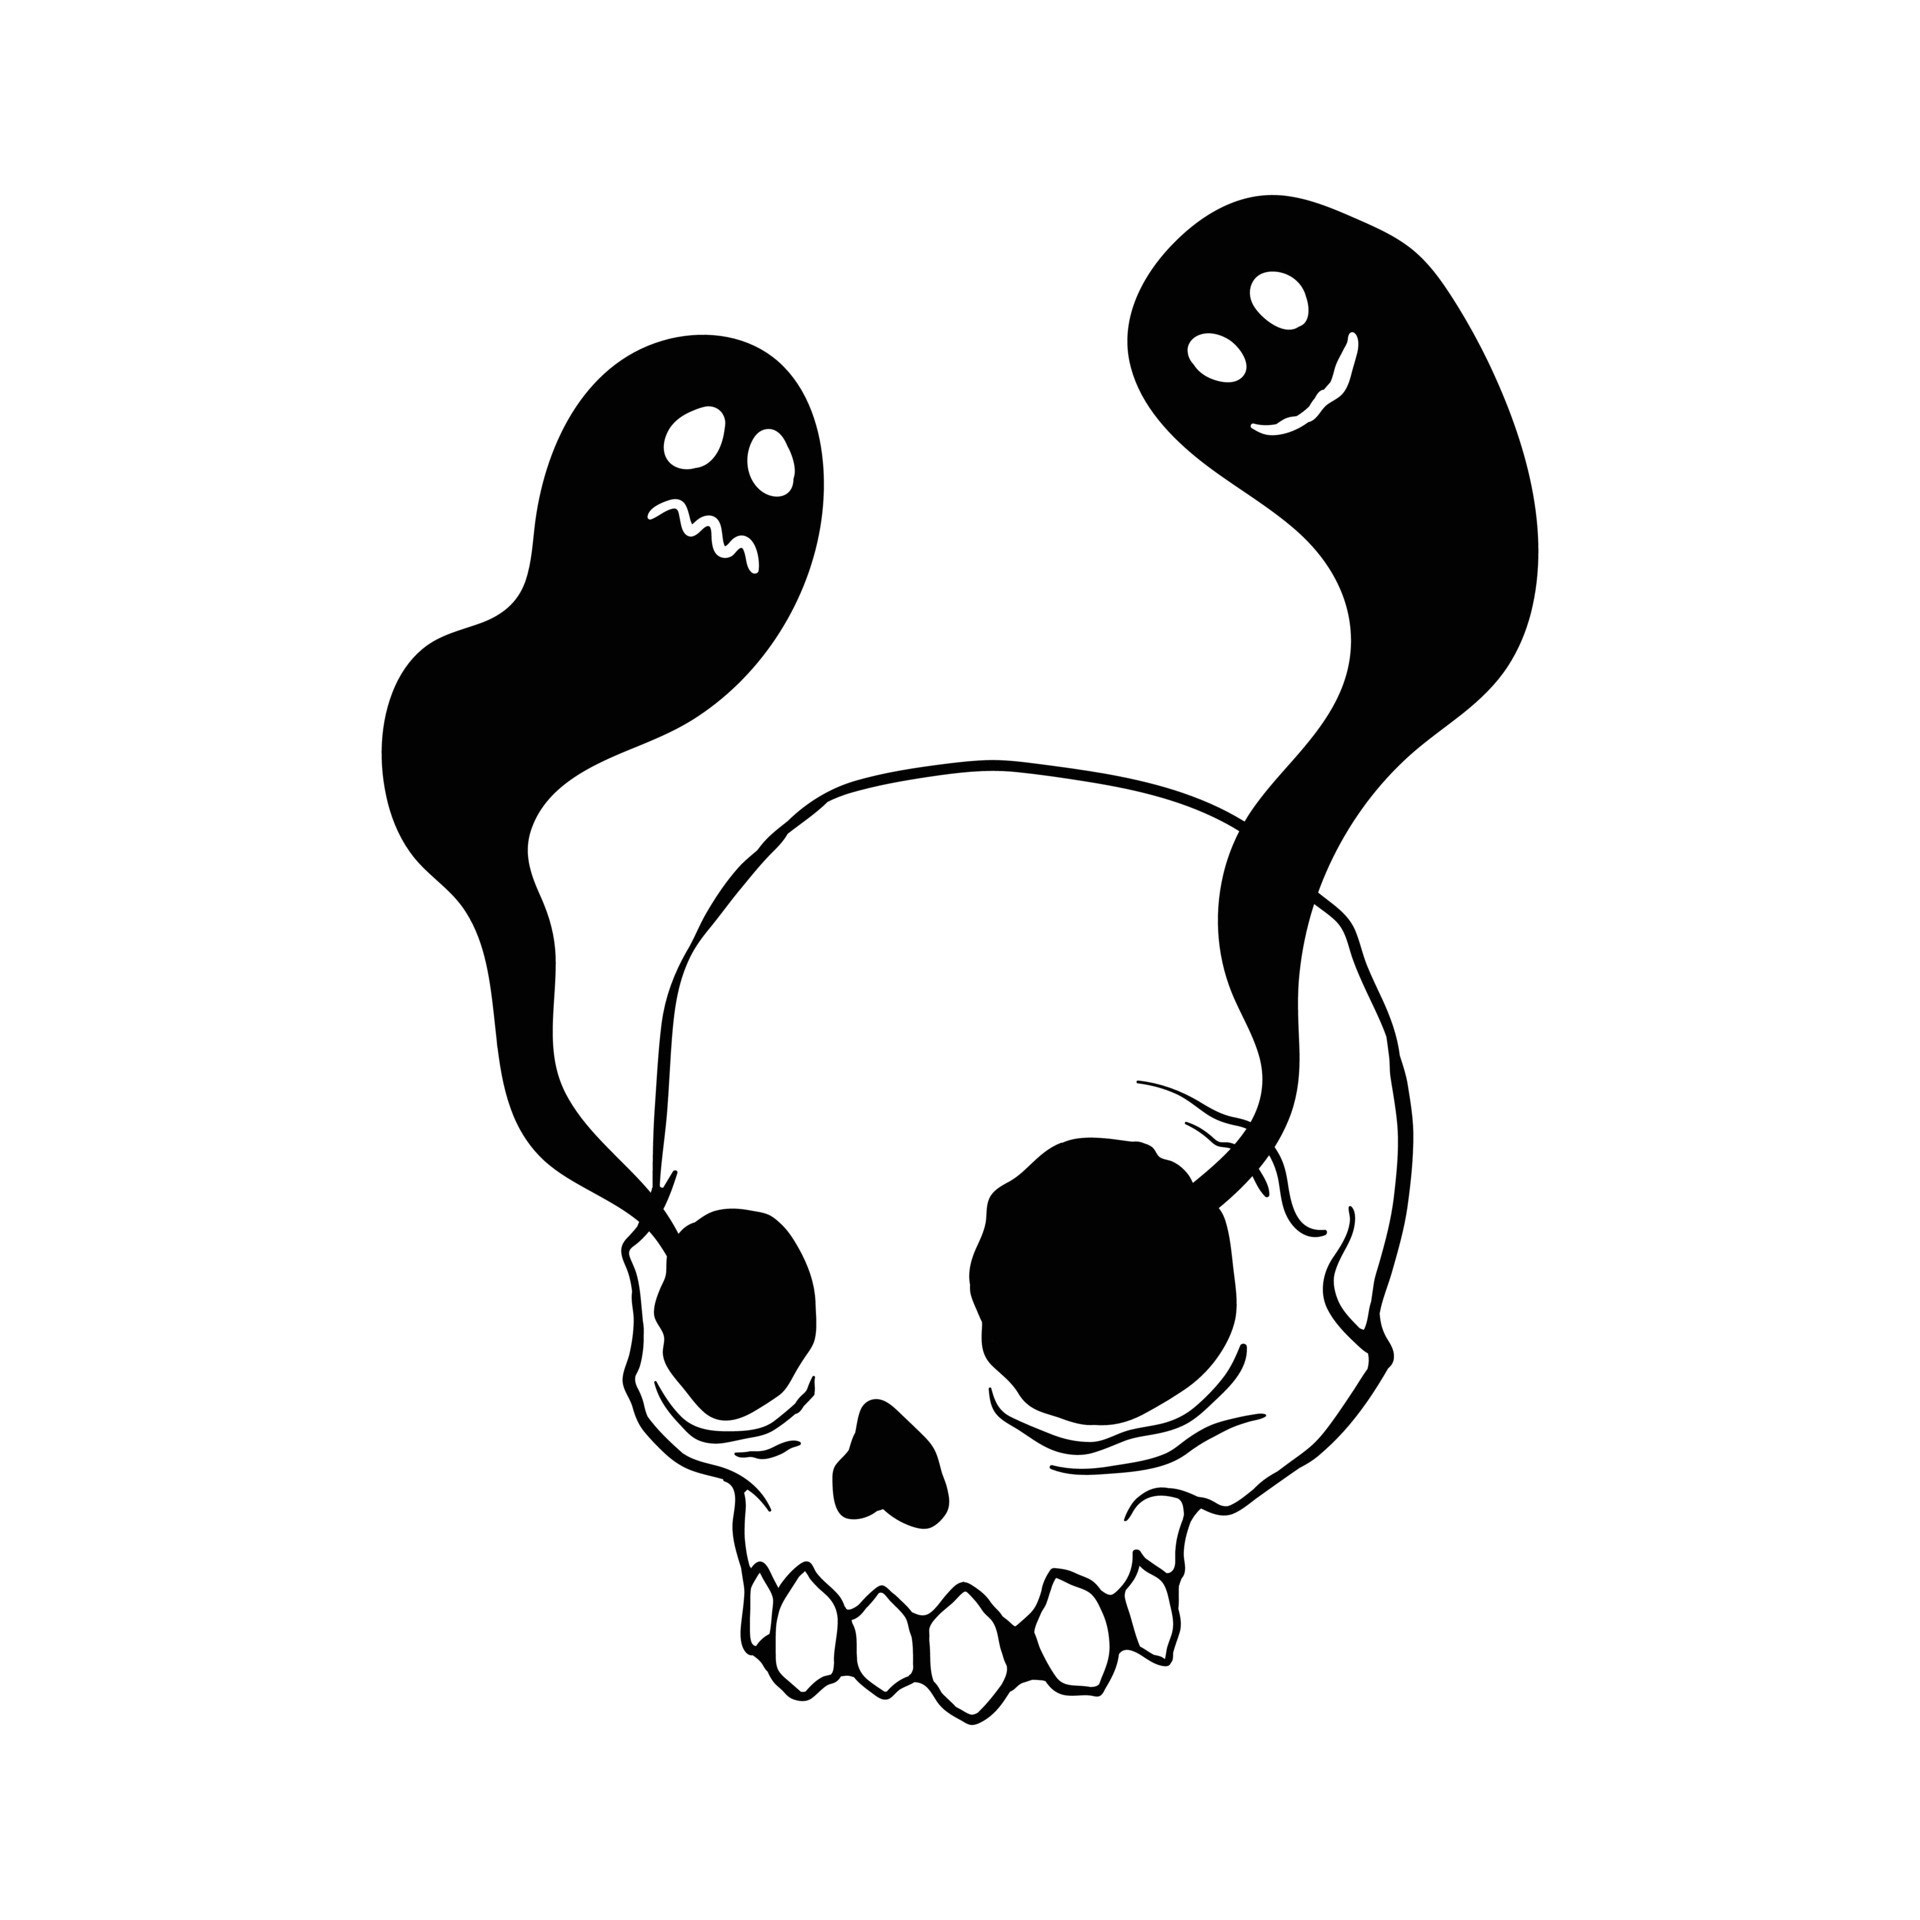 Tập vẽ đầu lâu 2  How to draw skull 2  Halloween vẽ hình xăm đầu lâu   YouTube